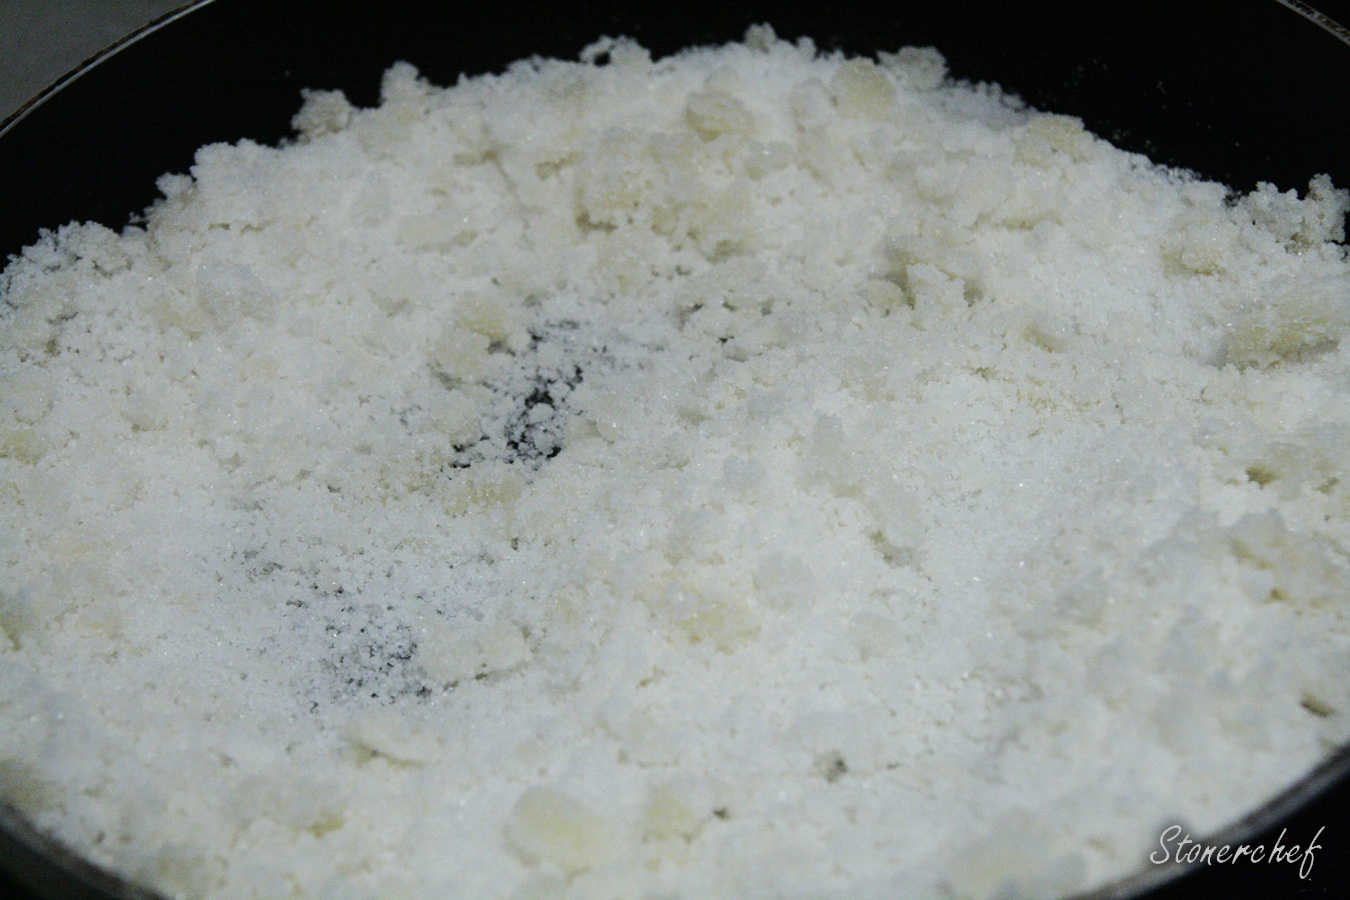 biały cukier przed karmelizacją